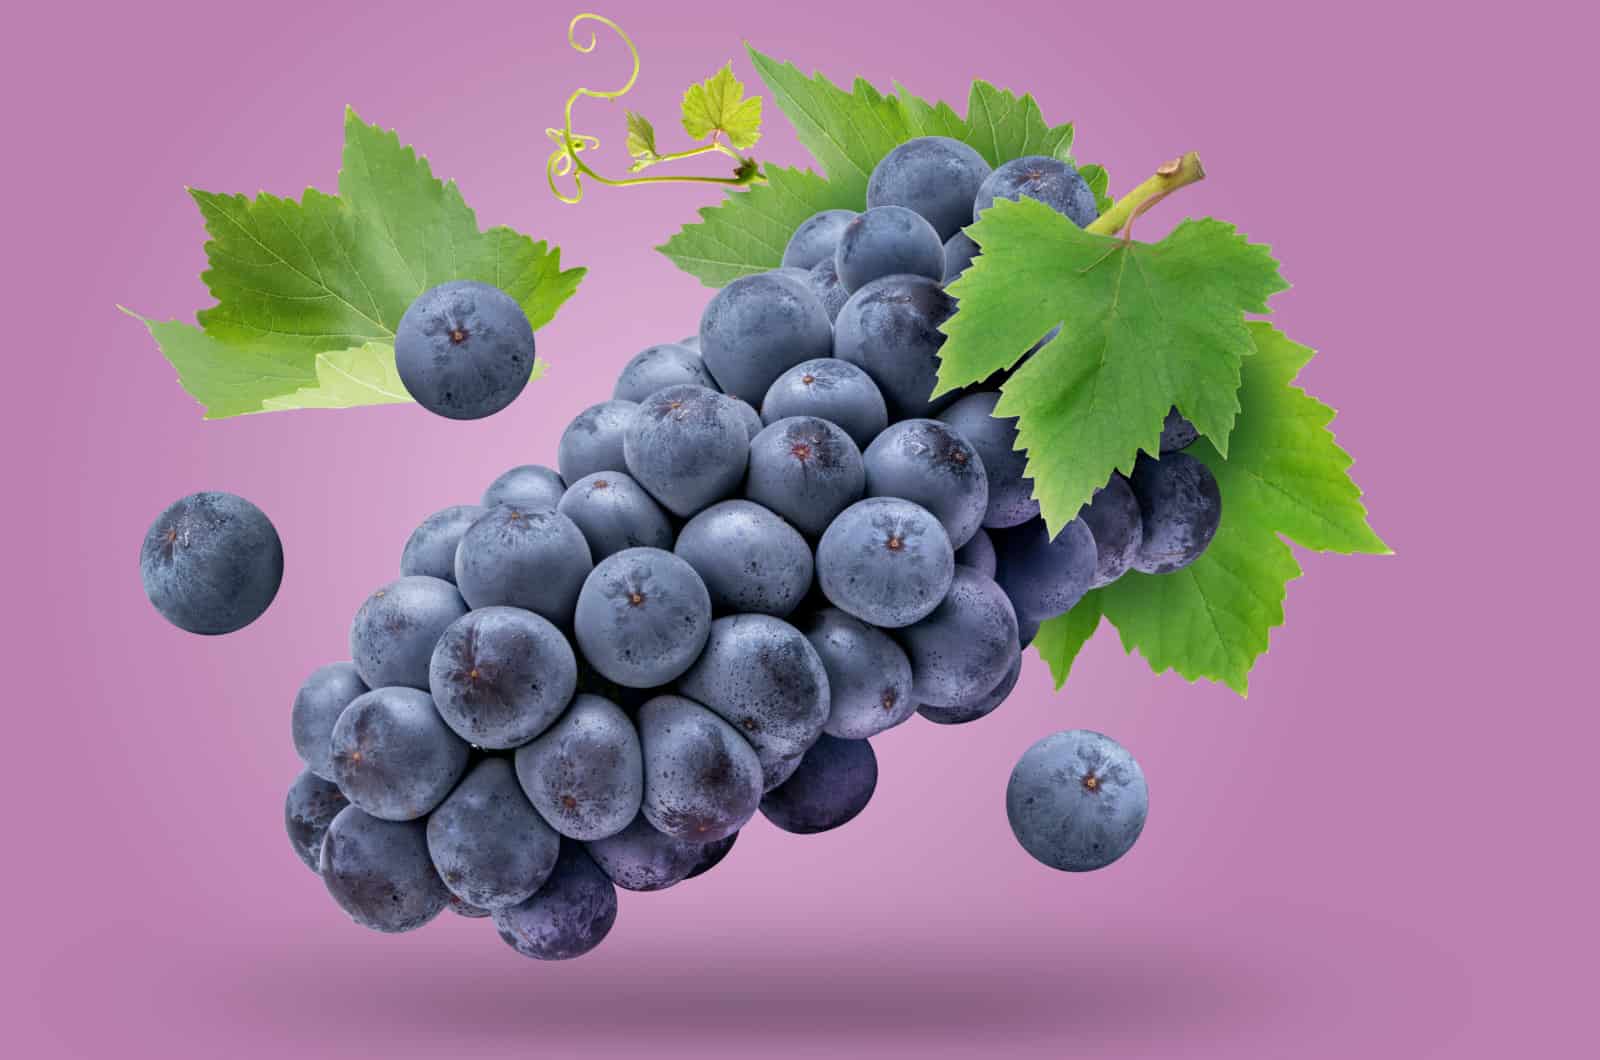 Kyoho grape